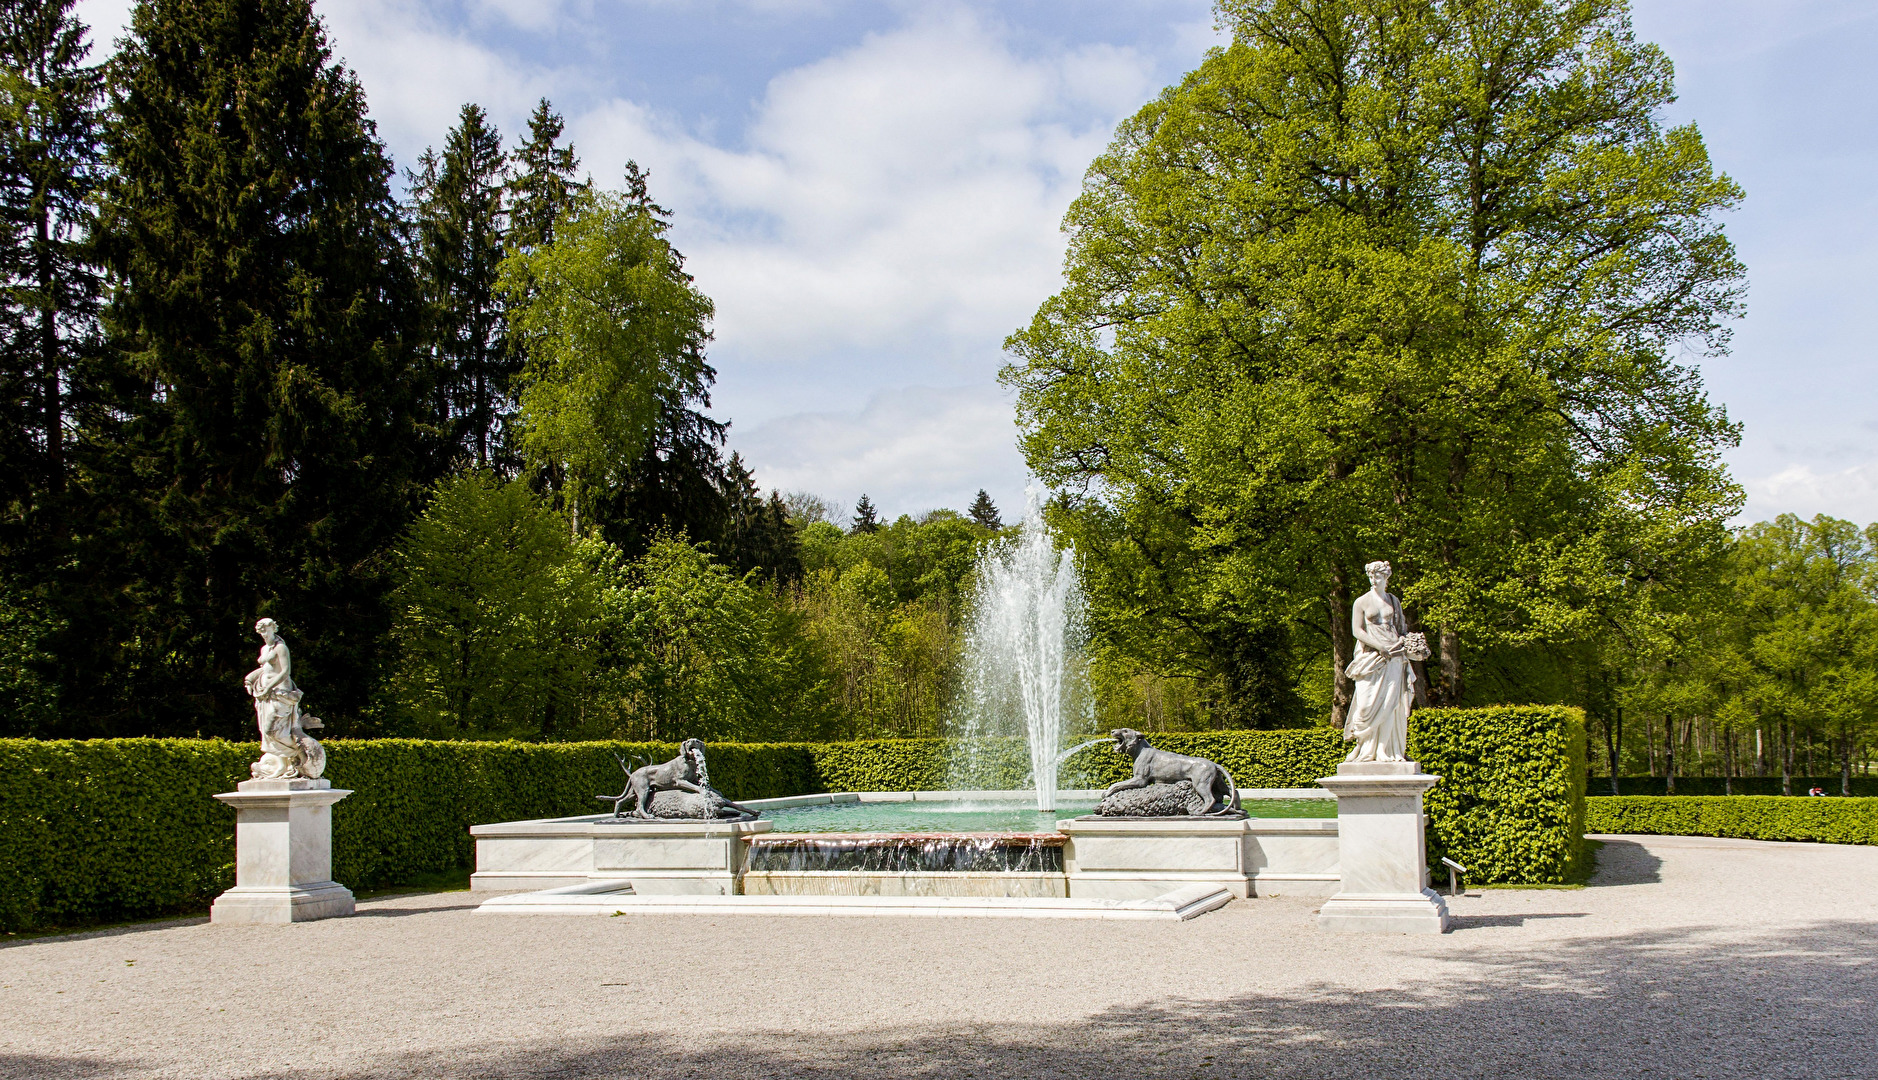 Brunnen rechtsseitig im Park Herreninsel aus Richtung Schloss gesehen